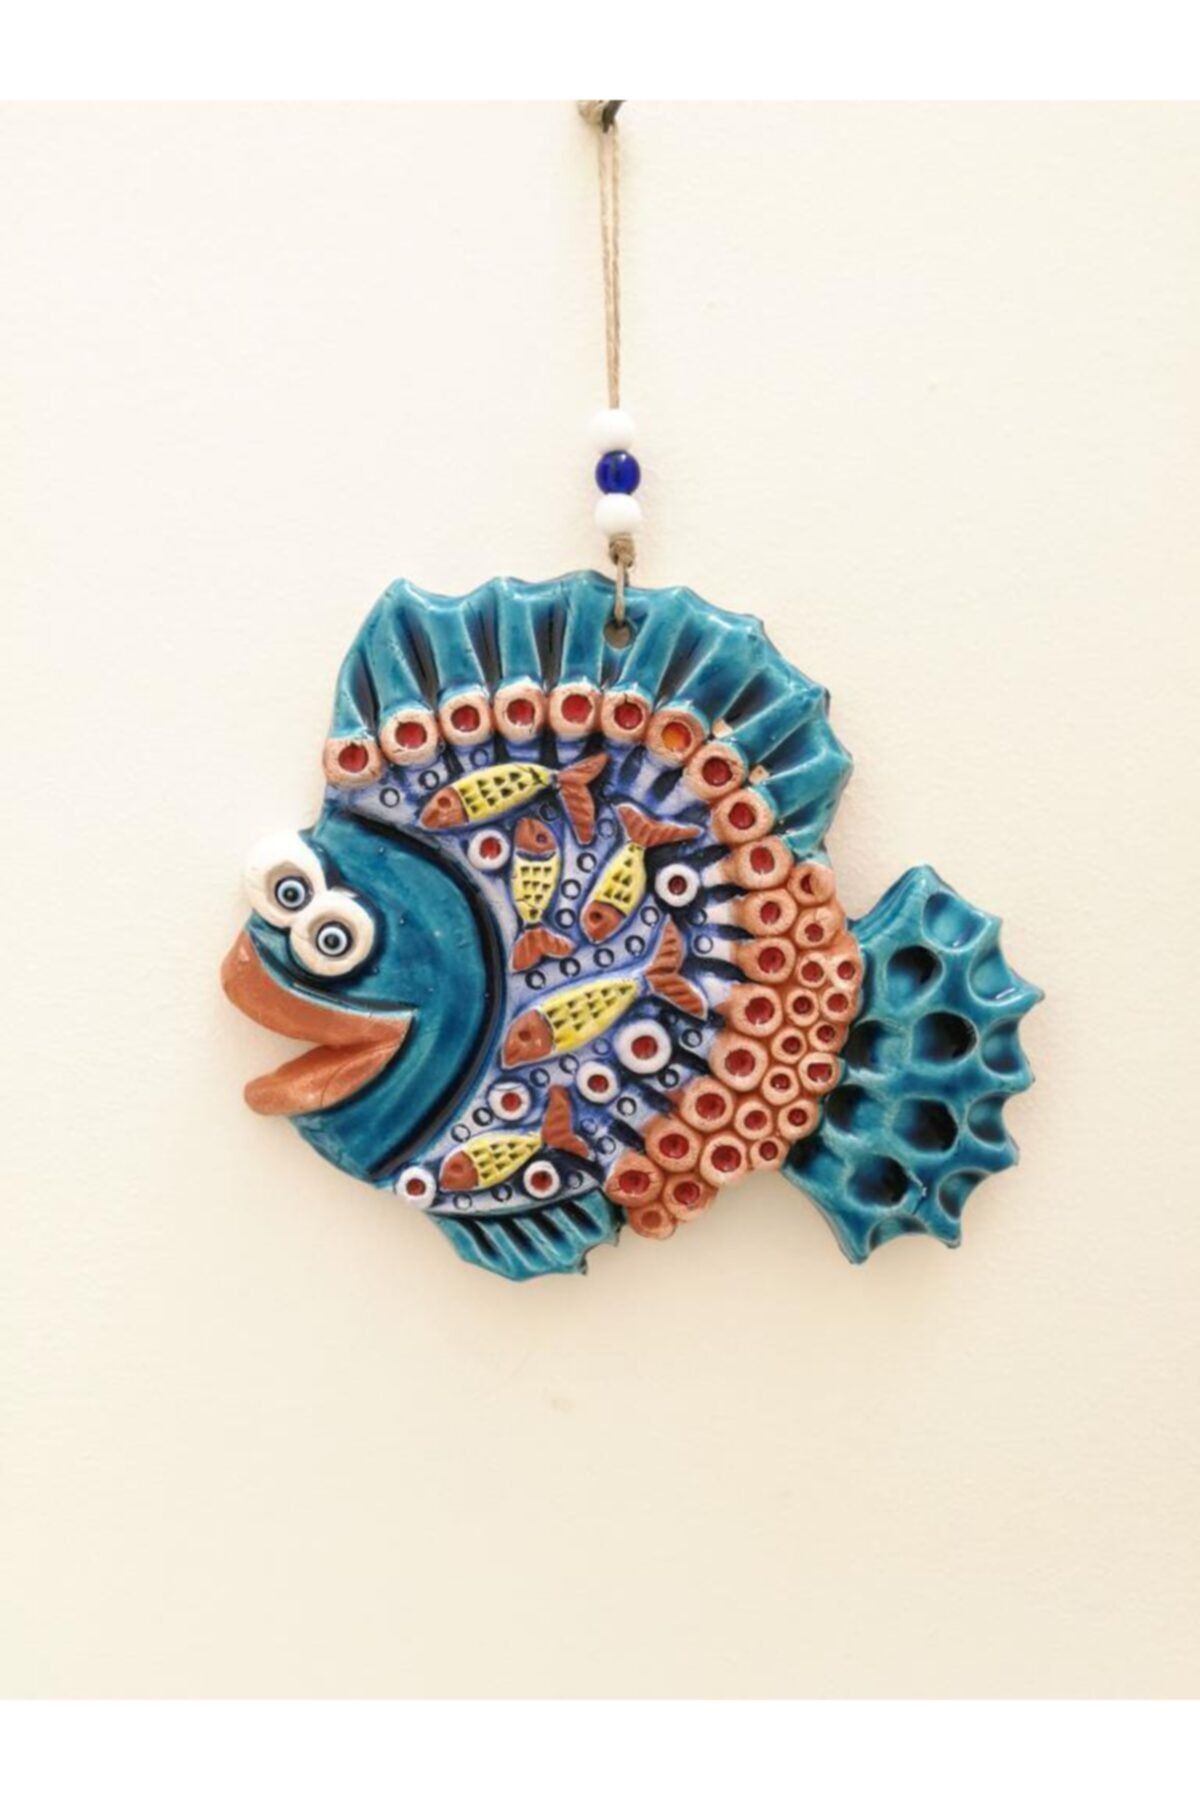 SUME Seramik Balık Dekoratif El Işi Duvar Süsü Nazarlık